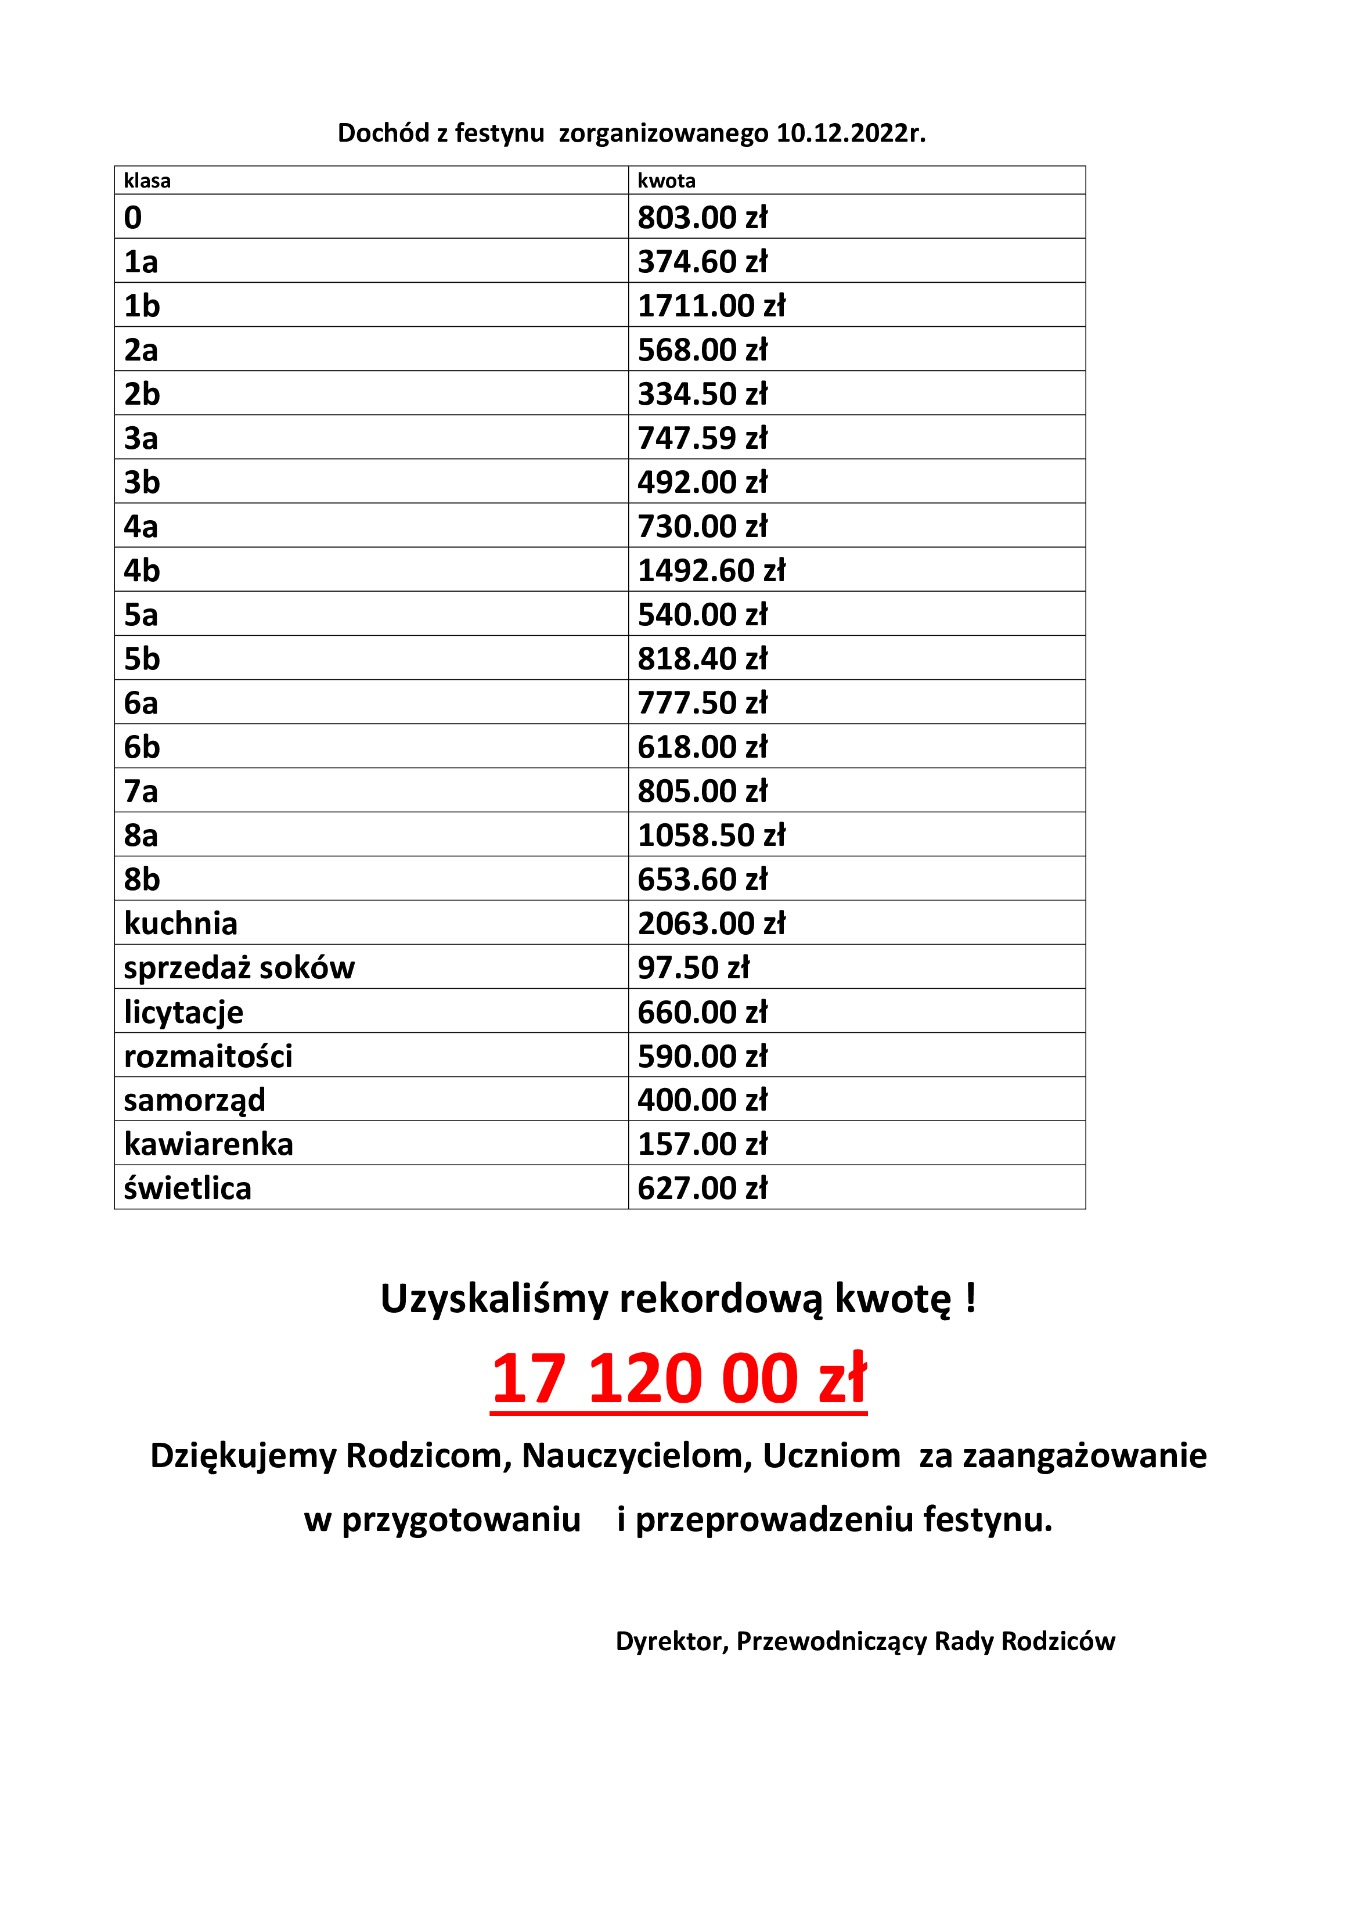 Tabela przedstawiająca dochód z Festynu Świątecznego , który odbył się 10 grudnia 2022 roku, Oraz podziękowania od Dyrekcji i Rady Rodziców dla Wszystkich, którzy przyczynili się do uzyskania kwoty 17 120 tysięcy.